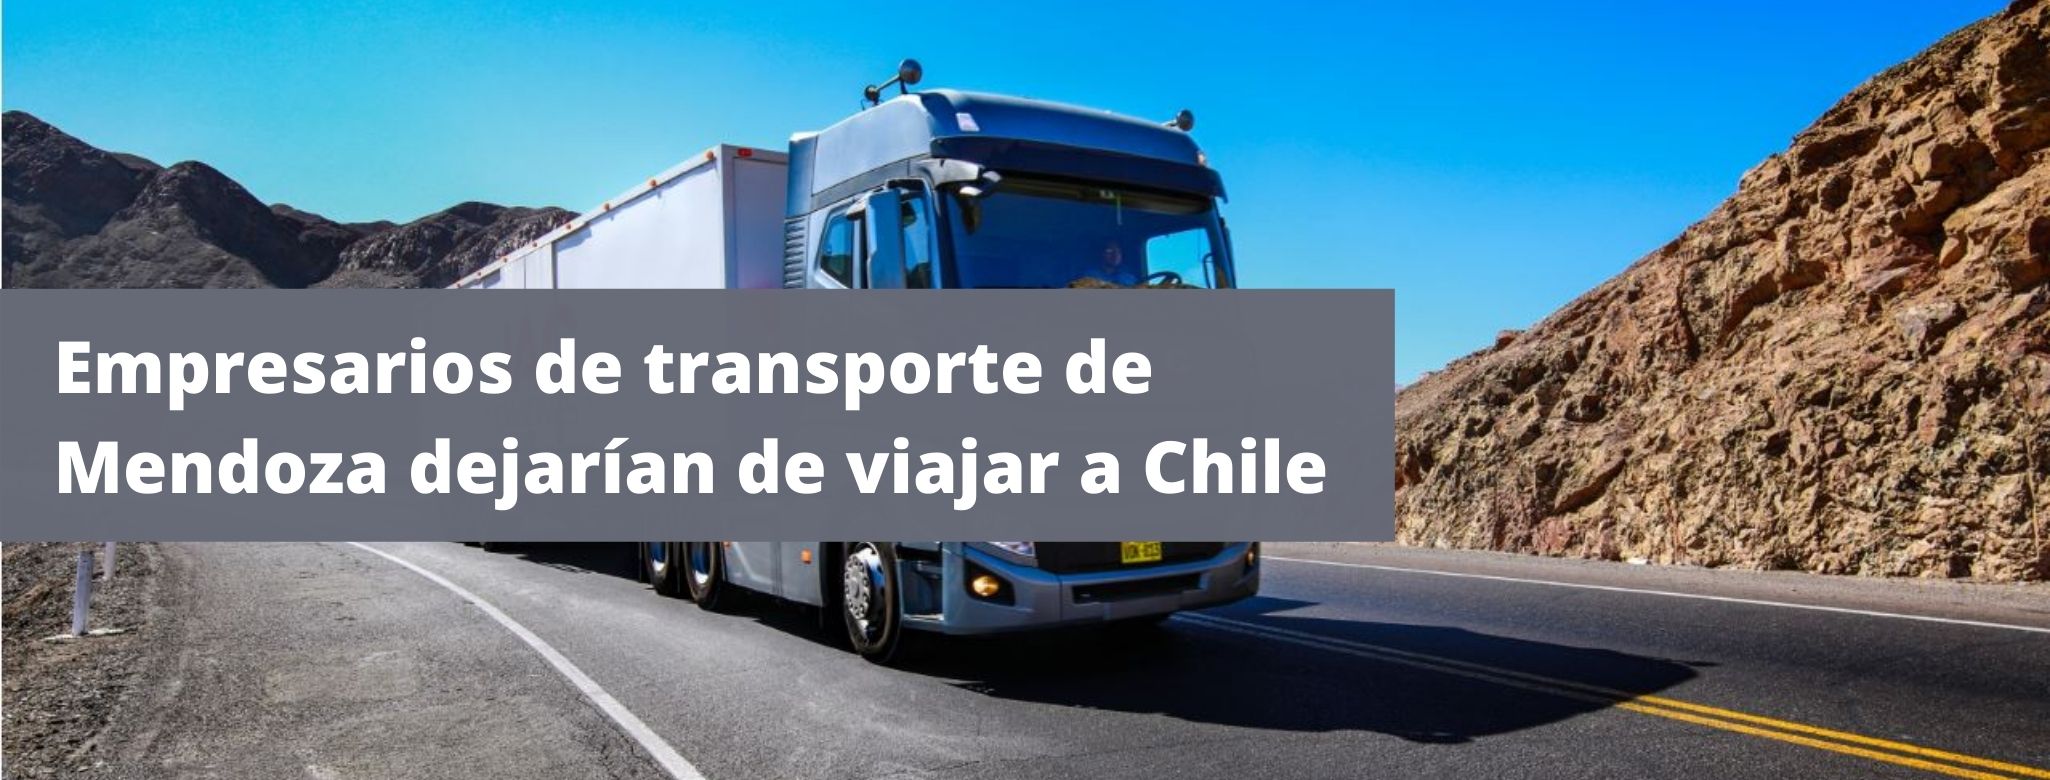 Empresarios de transporte de Mendoza dejarían de viajar a Chile